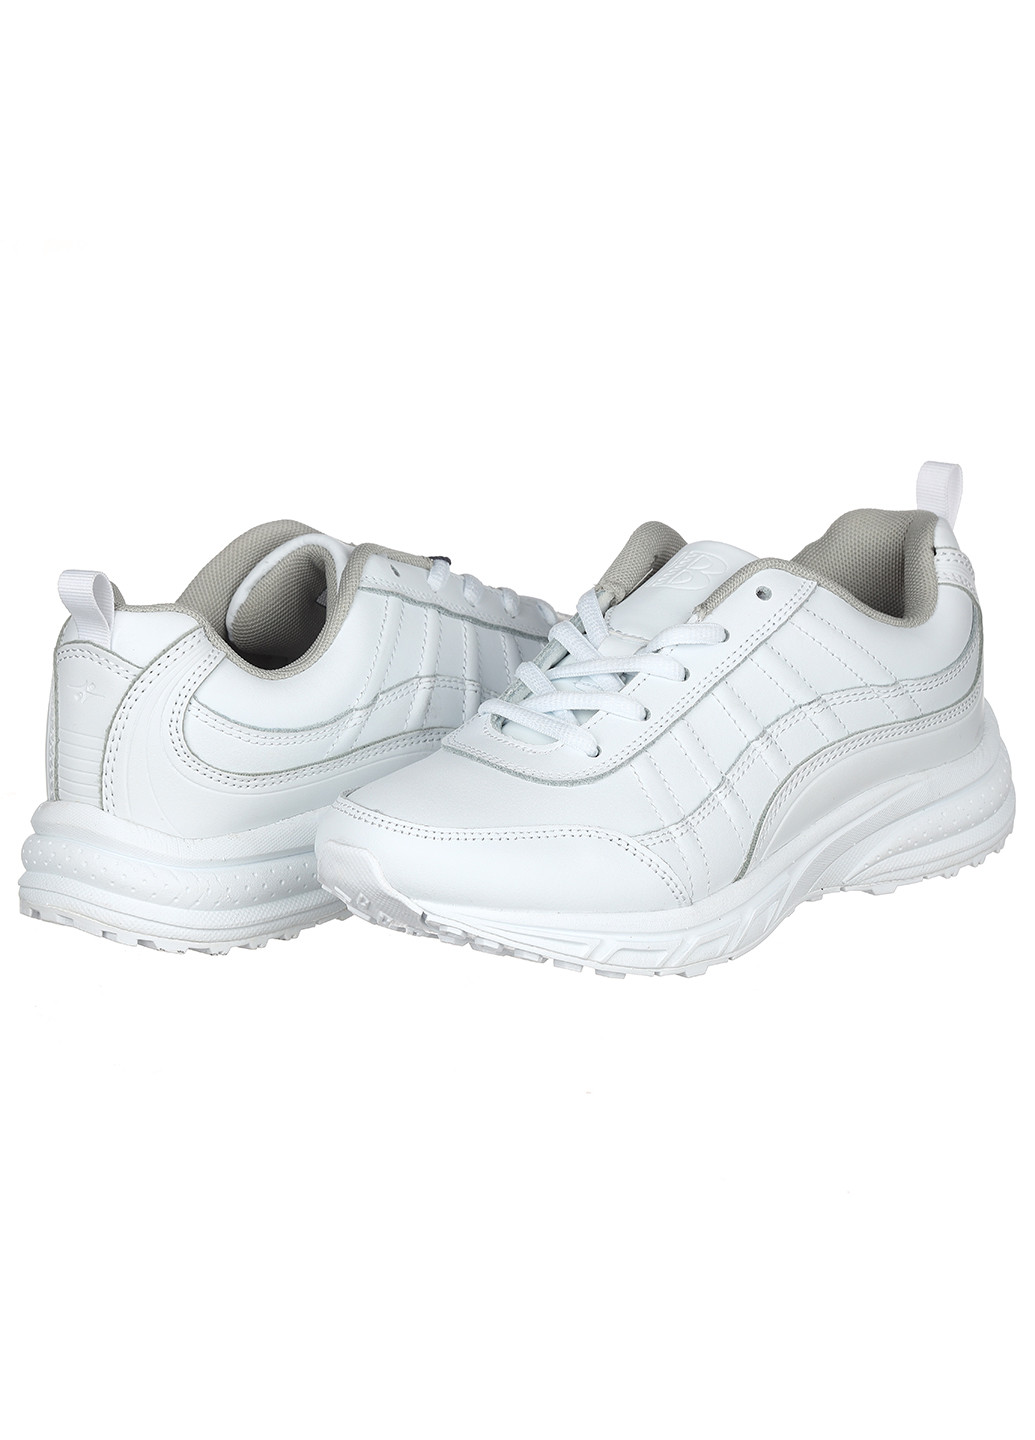 Белые демисезонные женские кроссовки 739а-2 Bona